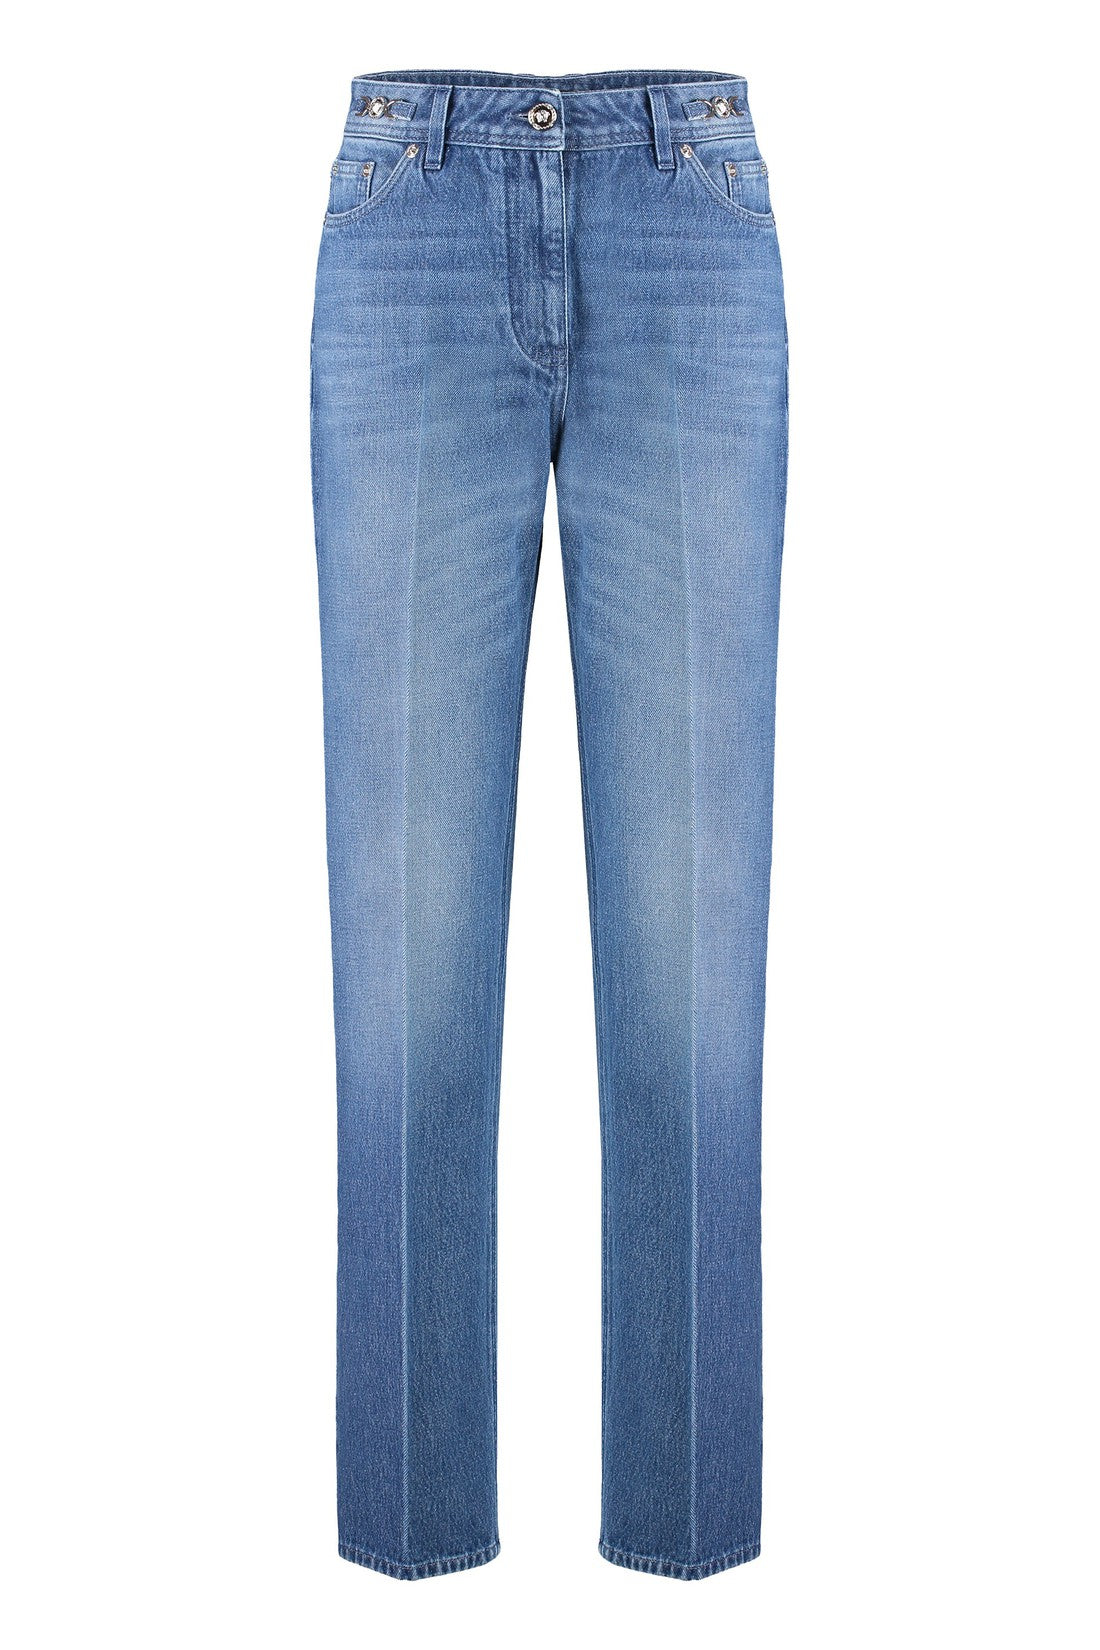 Versace-OUTLET-SALE-Boyfriend jeans-ARCHIVIST